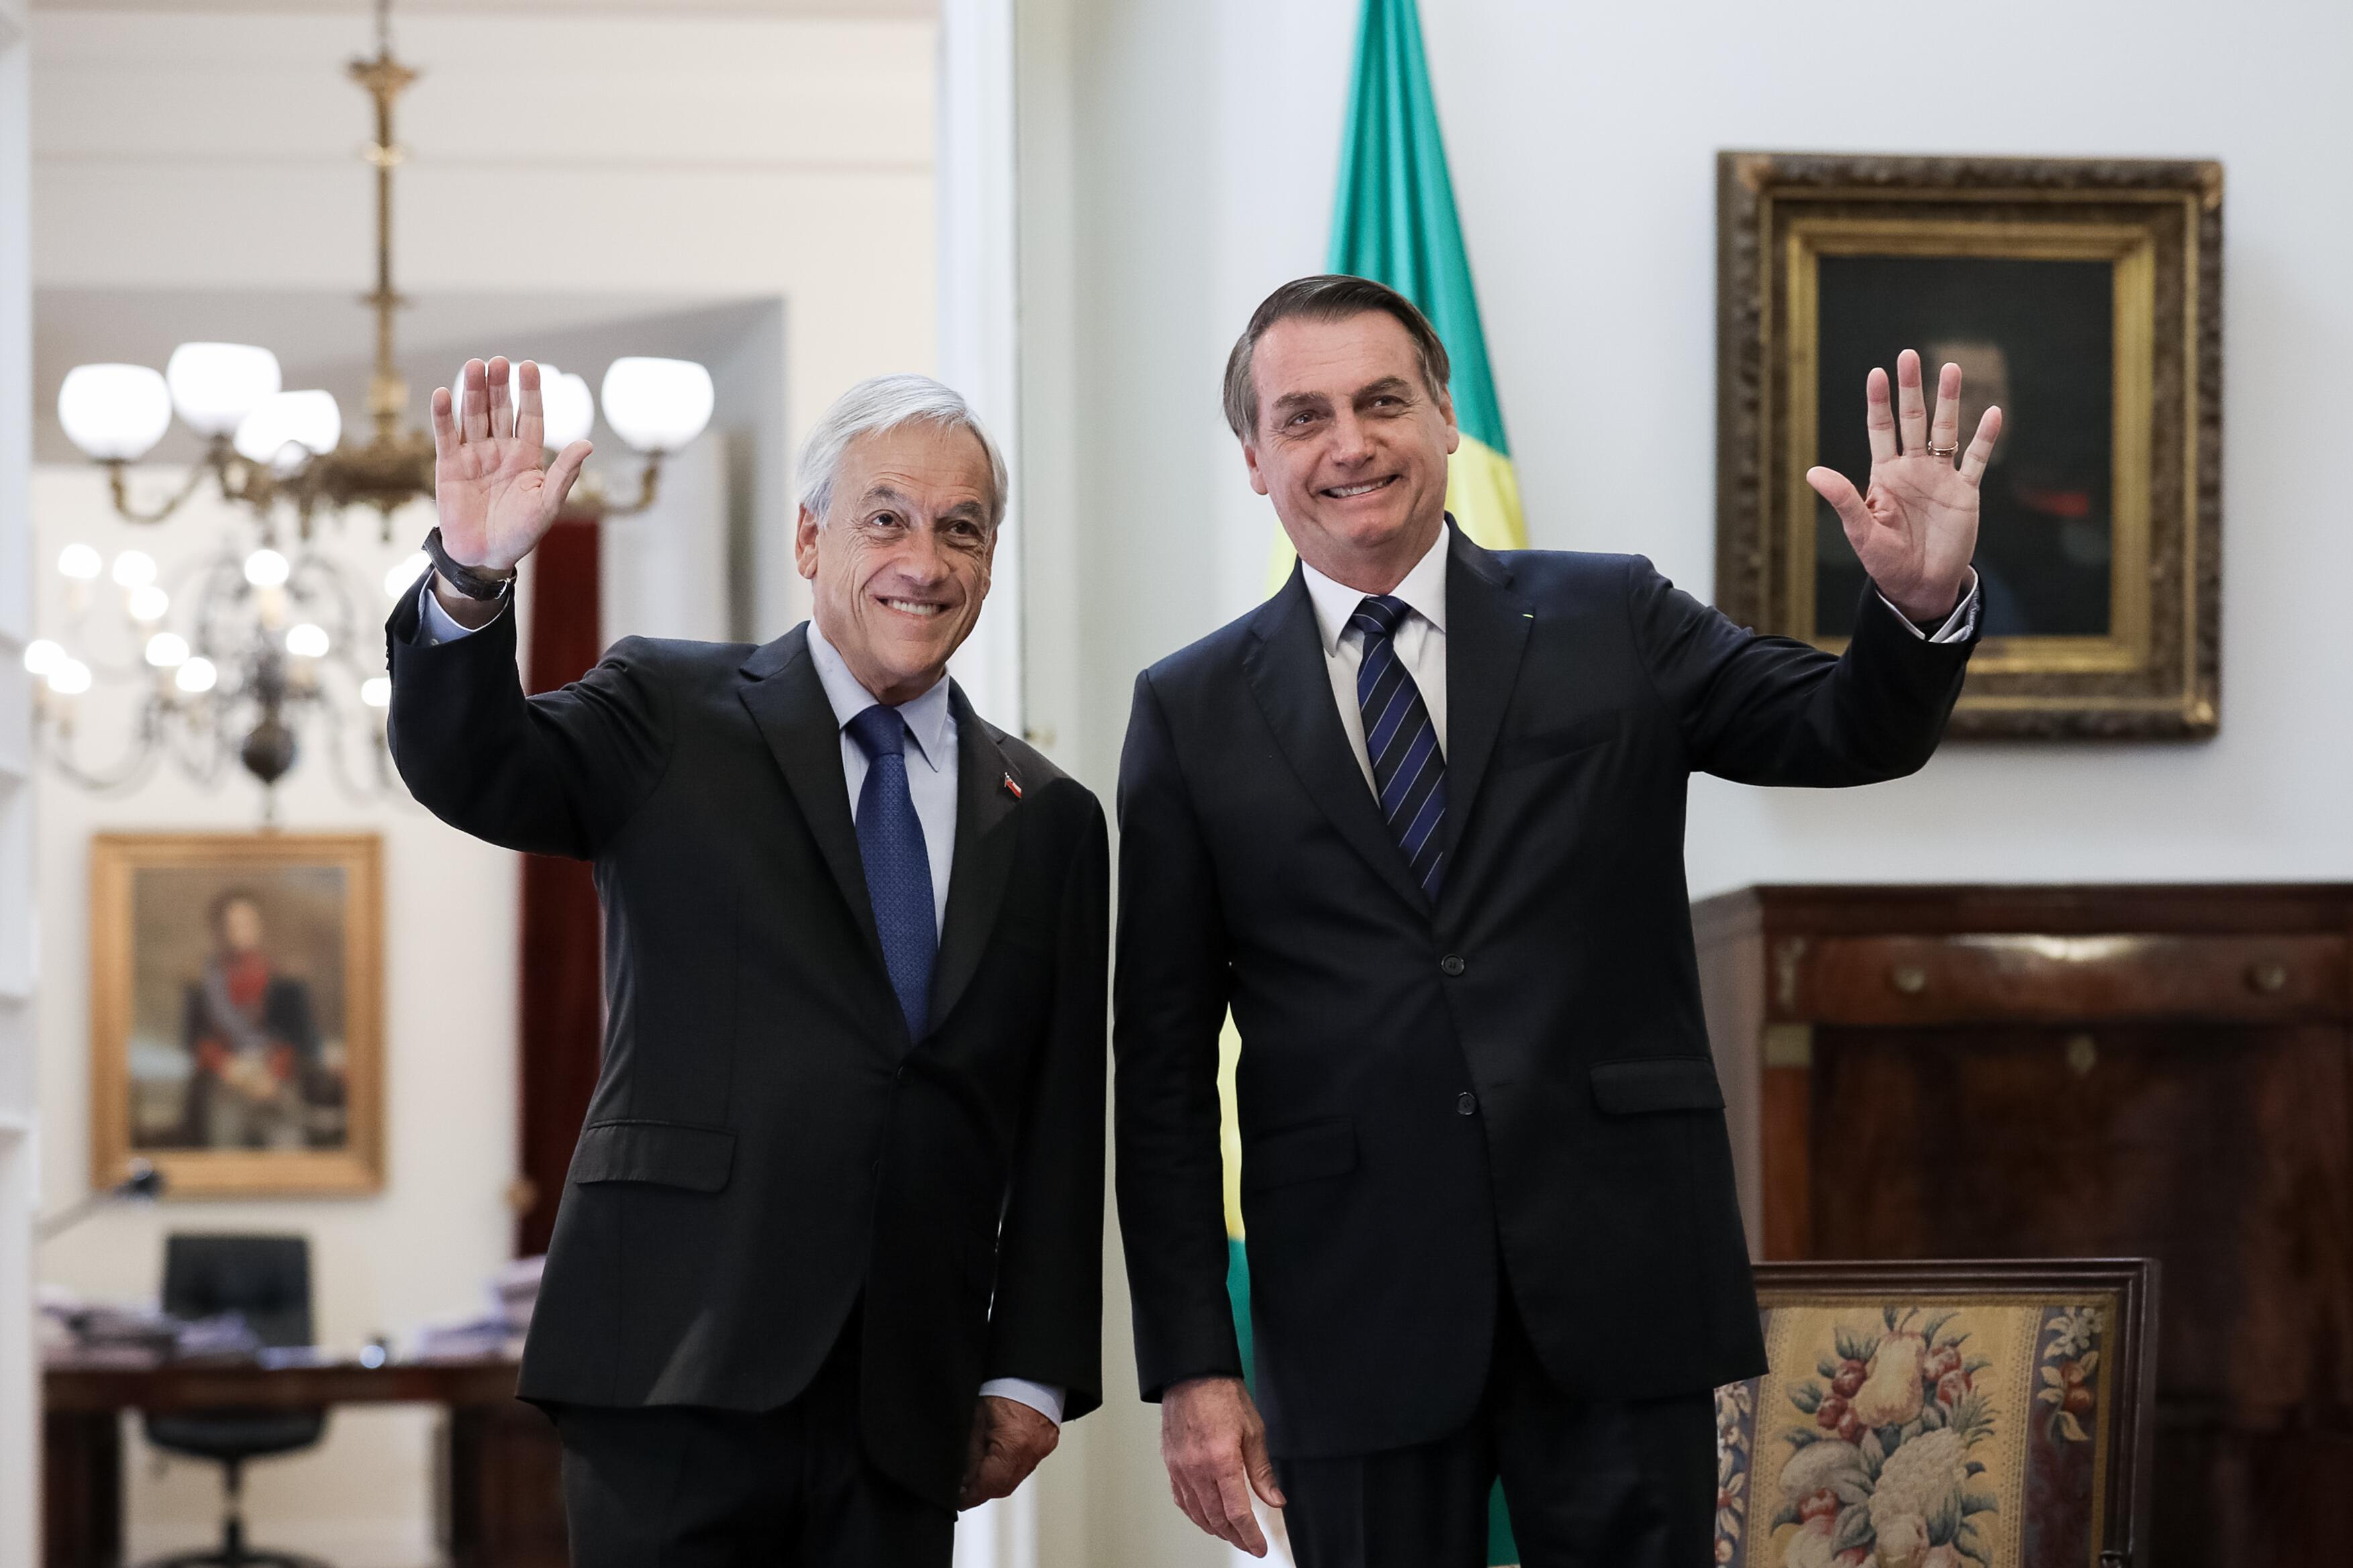 Presidente da República, Jair Bolsonaro durante Reunião Bilateral com Presidente do Chile, Sebastián Piñera, em 23 de março de 2019. Foto: Marcos Corrêa/PR 